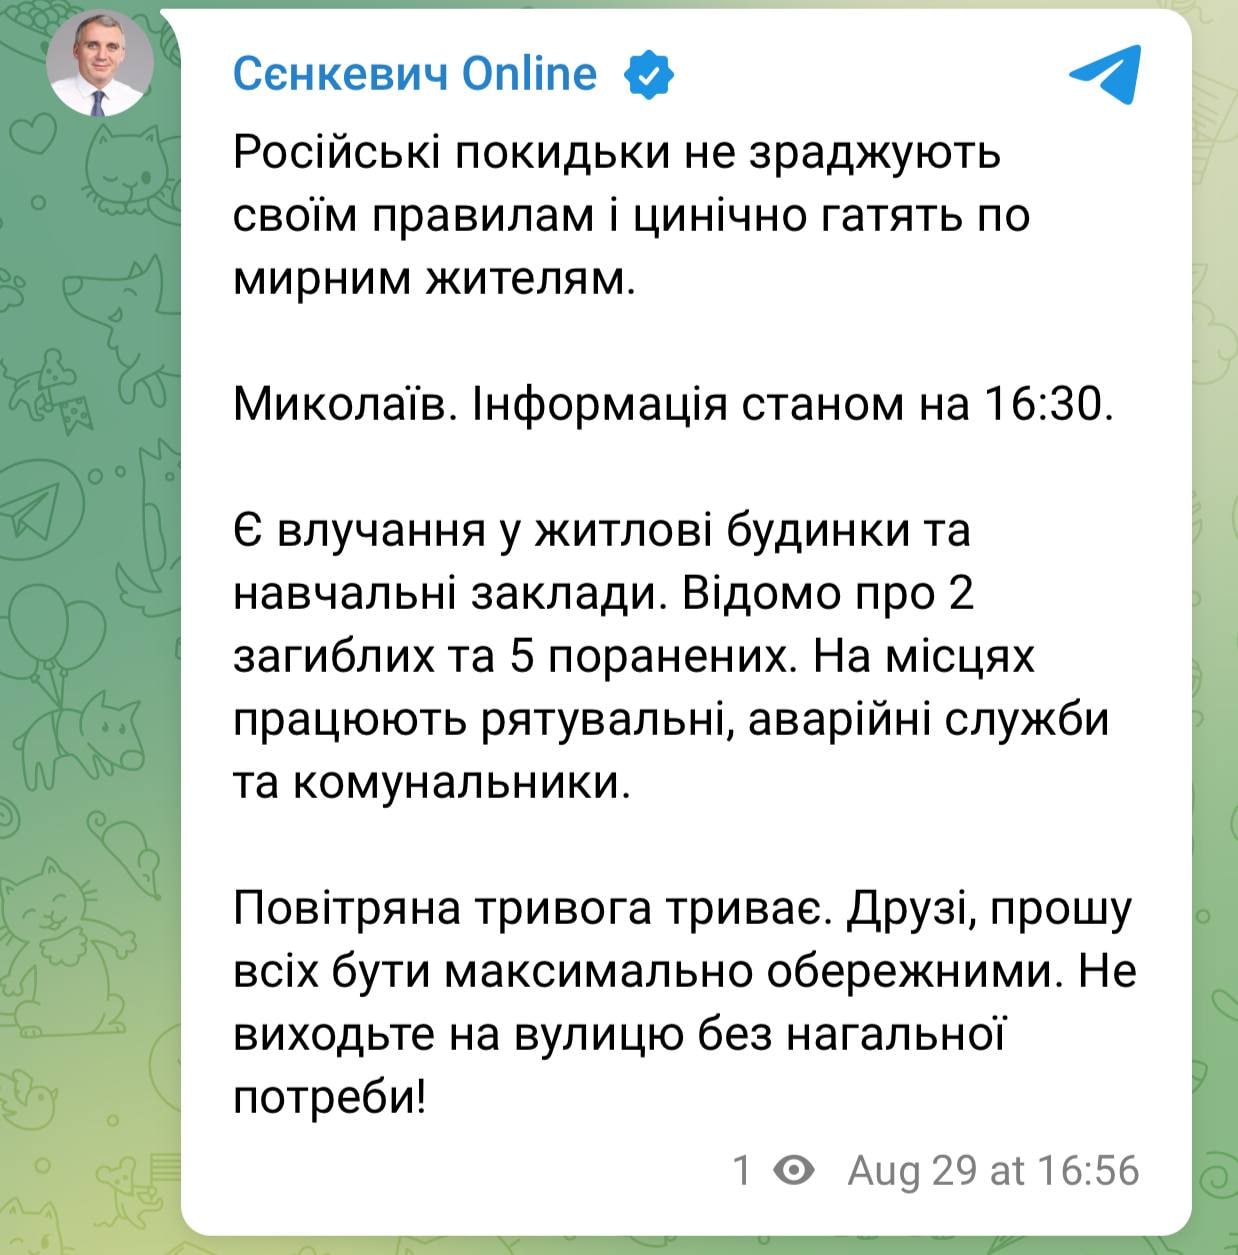 Мер Миколаєва Сєнкевич повідомляє про 2 загиблих та 5 поранених внаслідок обстрілу окупантів